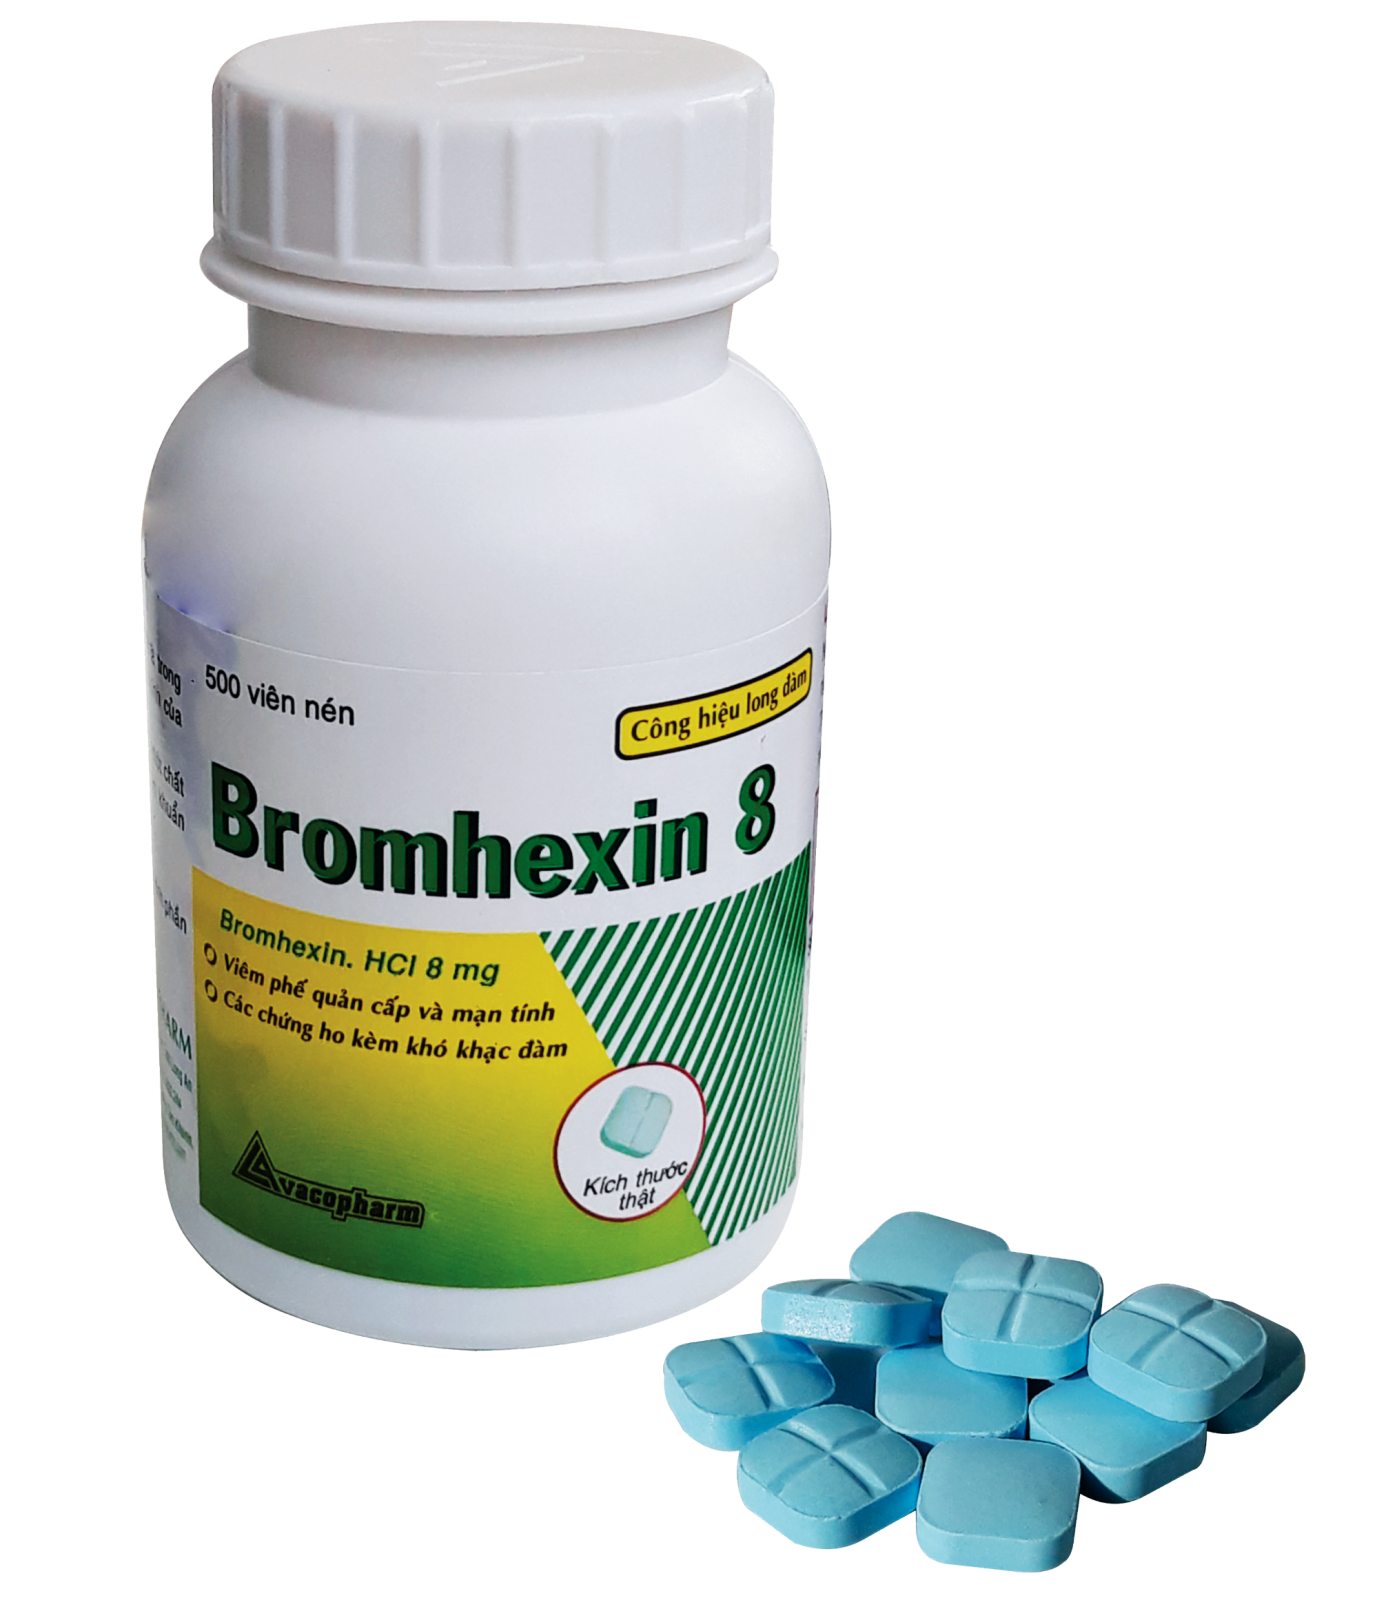 Thuốc bromhexin hydroclorid có thể mua ở đâu và có cần đơn thuốc không?